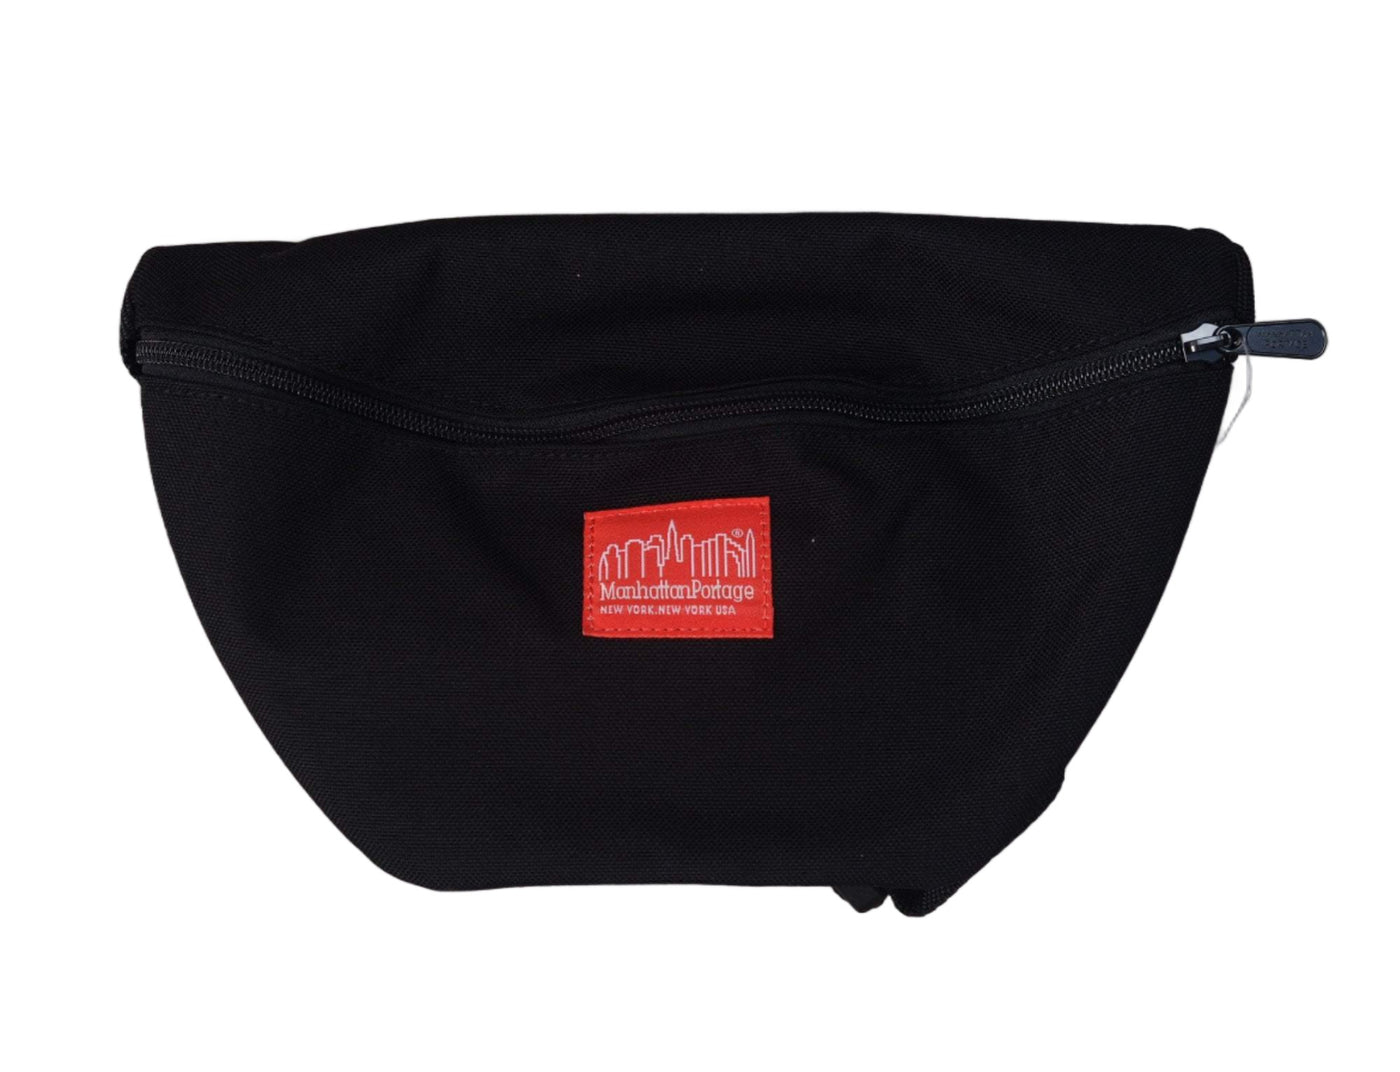 Accessories Bag Manhattan Portage Retro Pack Black Manhattan Portage Bag / Black / One Size